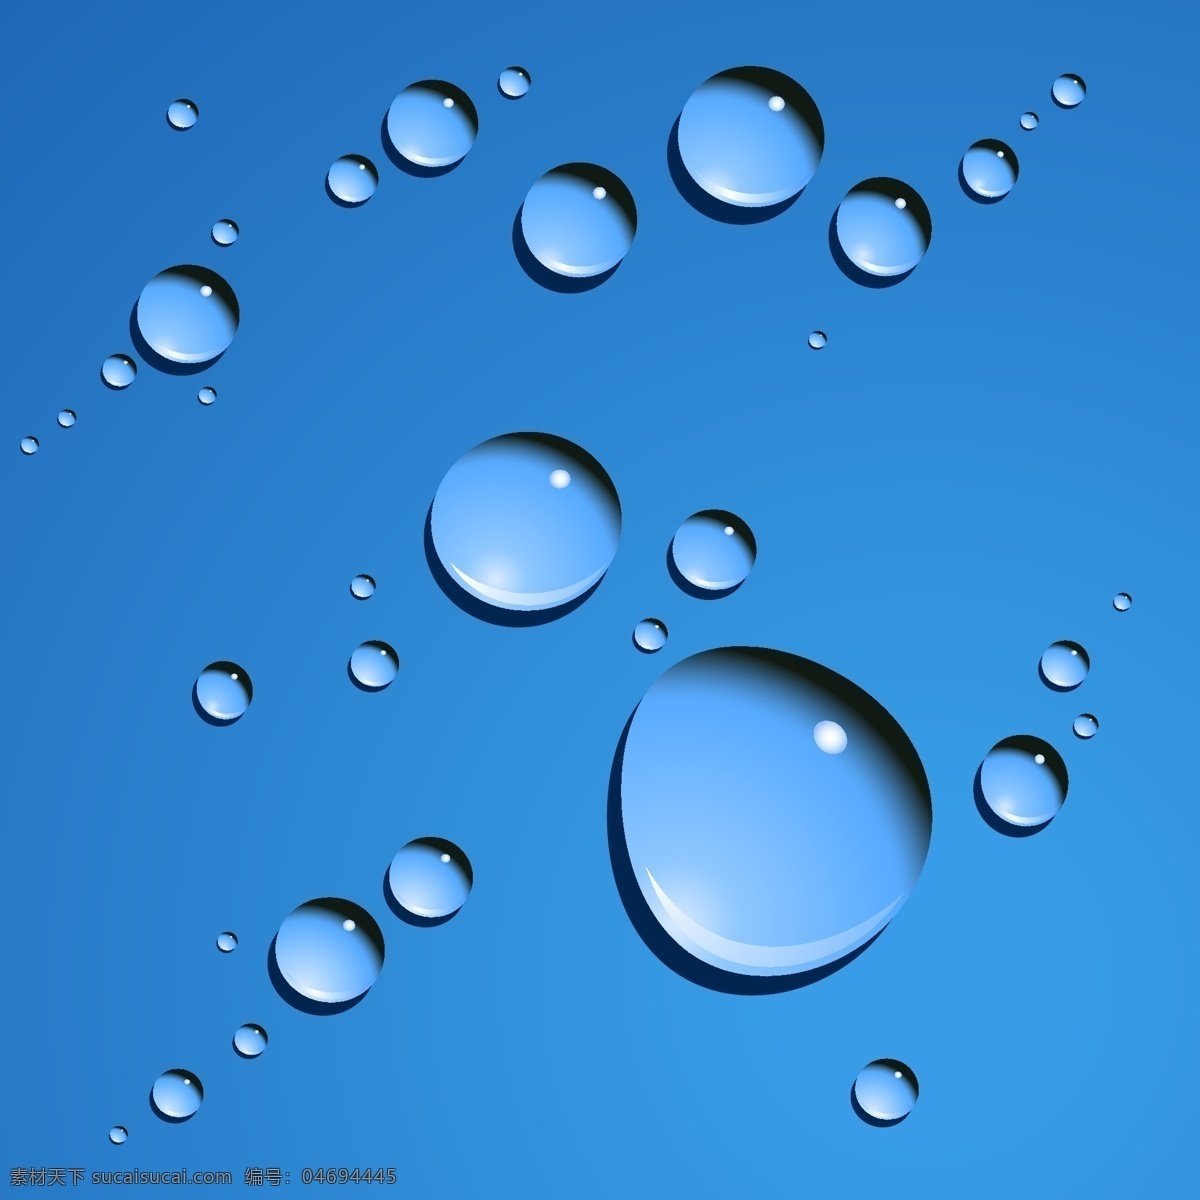 矢量 晶莹剔透 水珠 动感 矢量素材 水滴 水花 矢量图